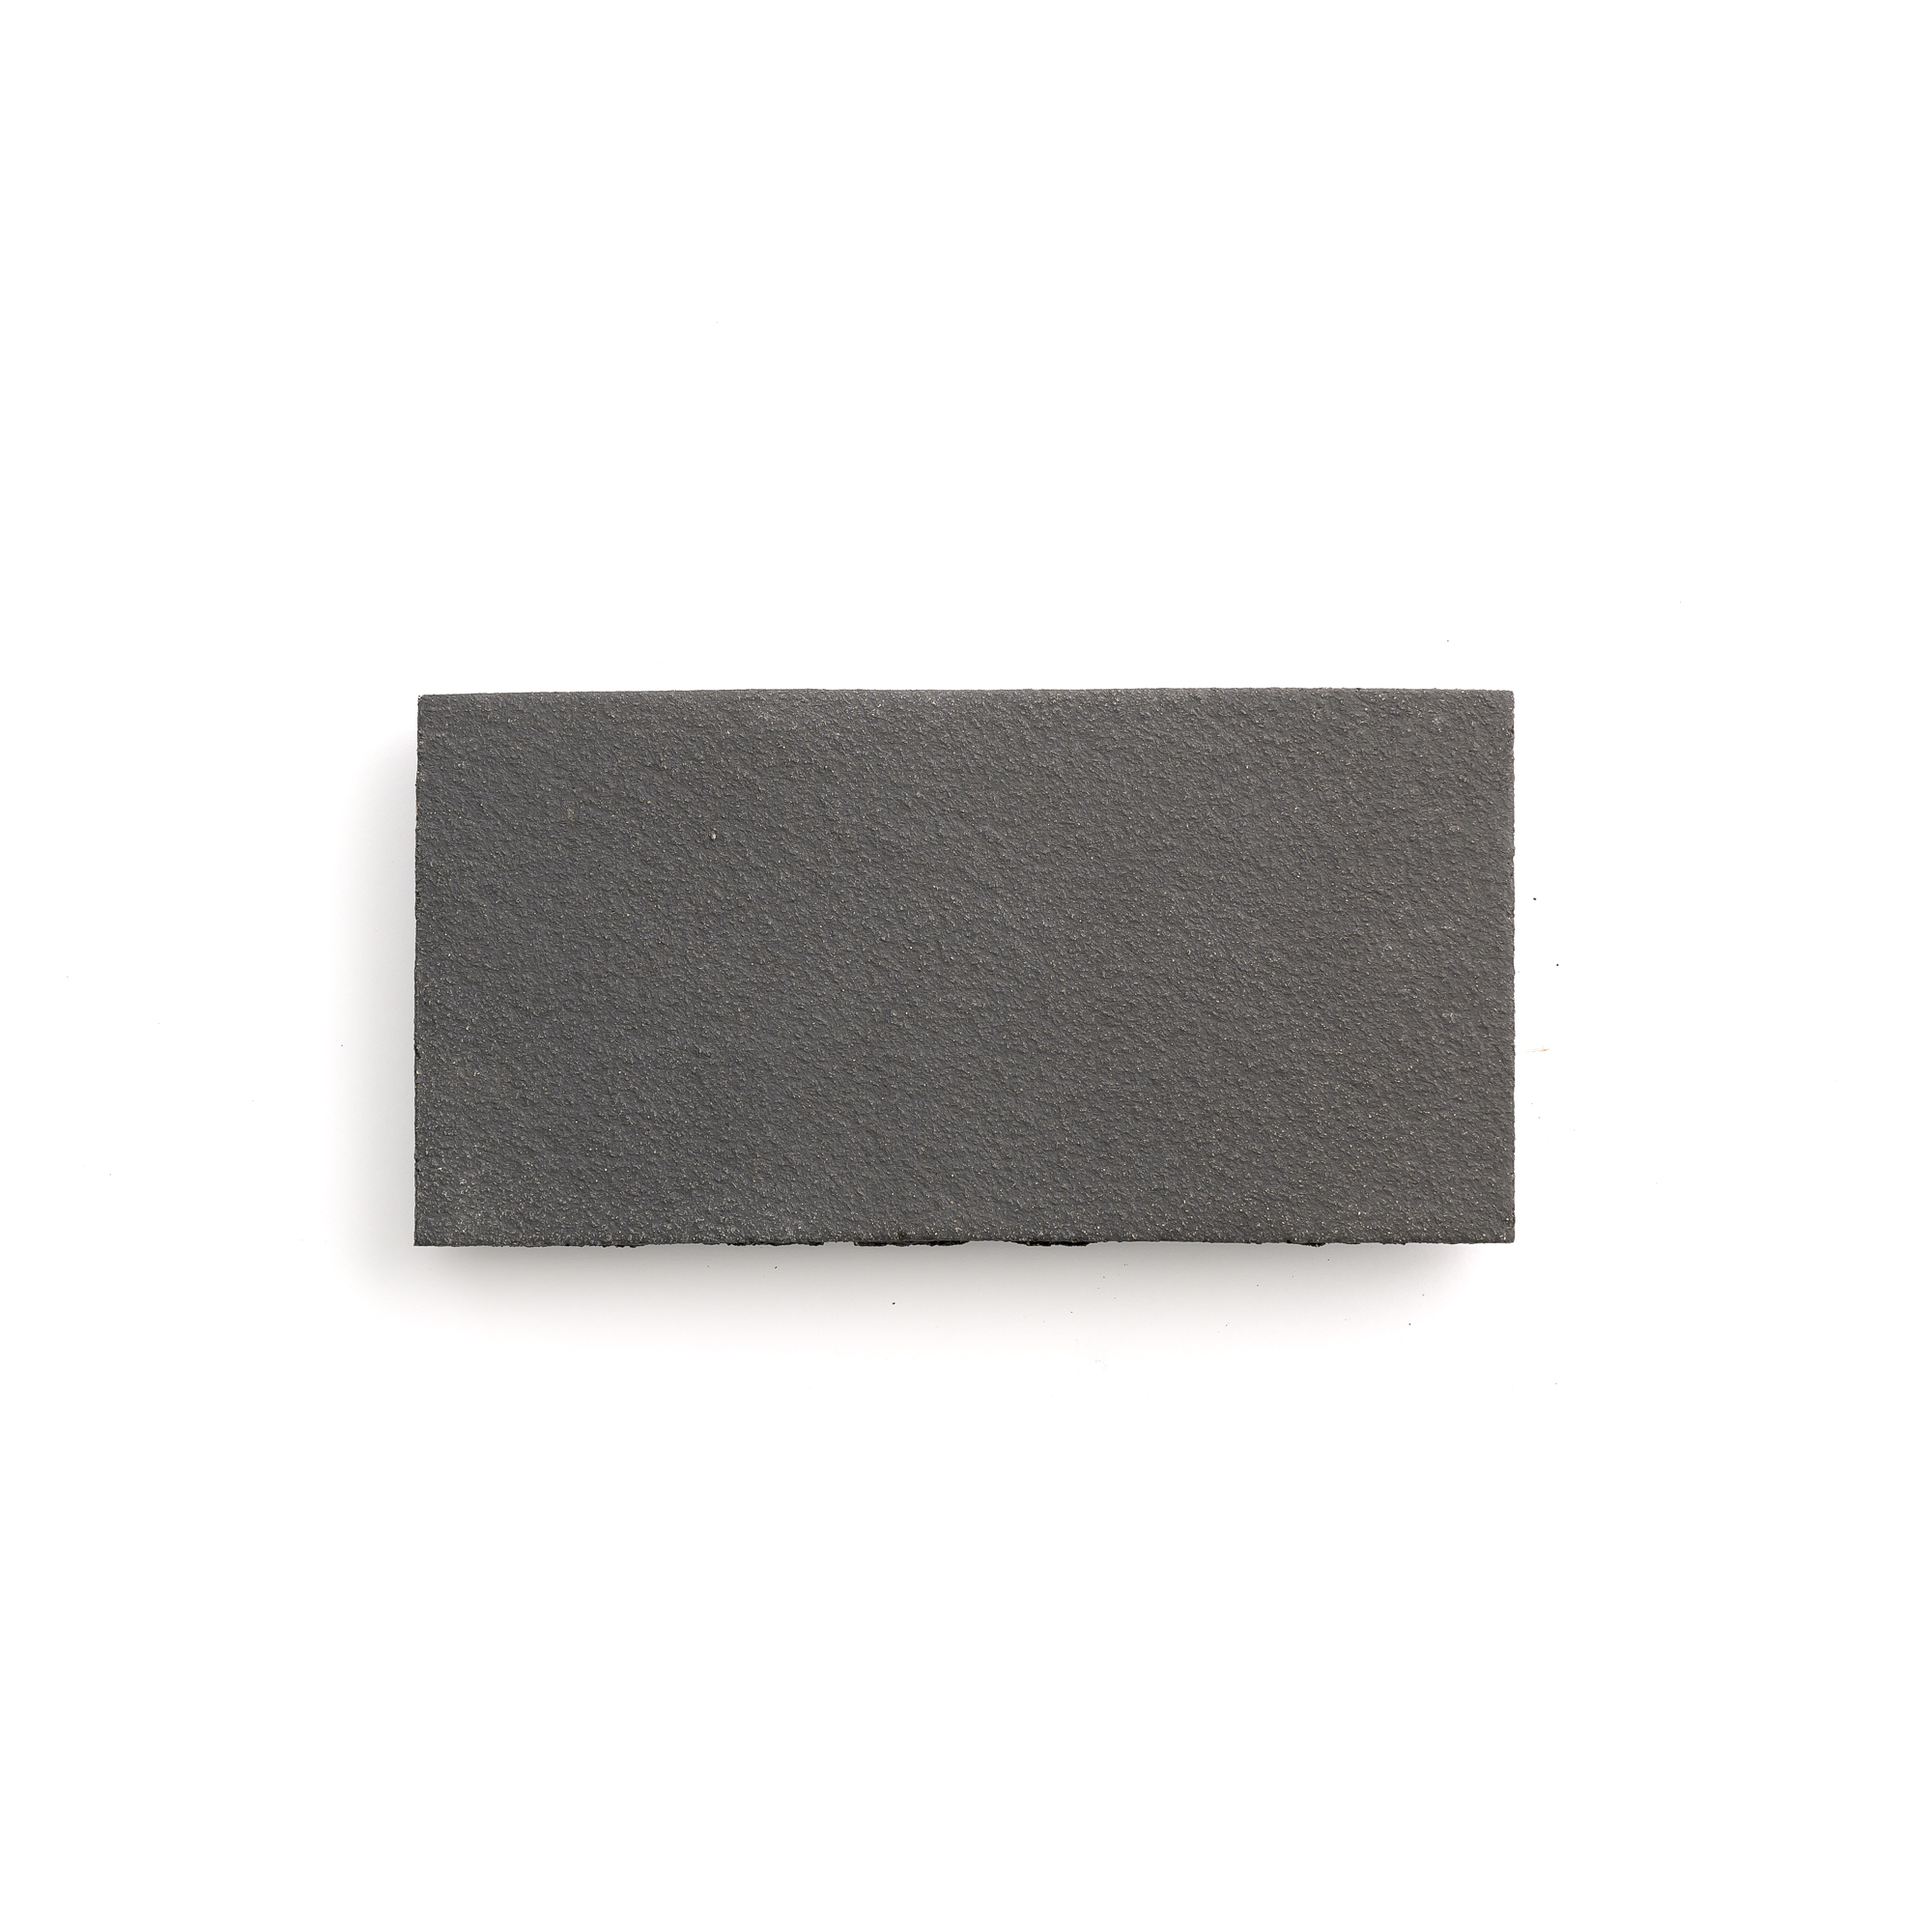 Sample: Black Terracotta Tile - 4x8 (1 sample=2 tiles)